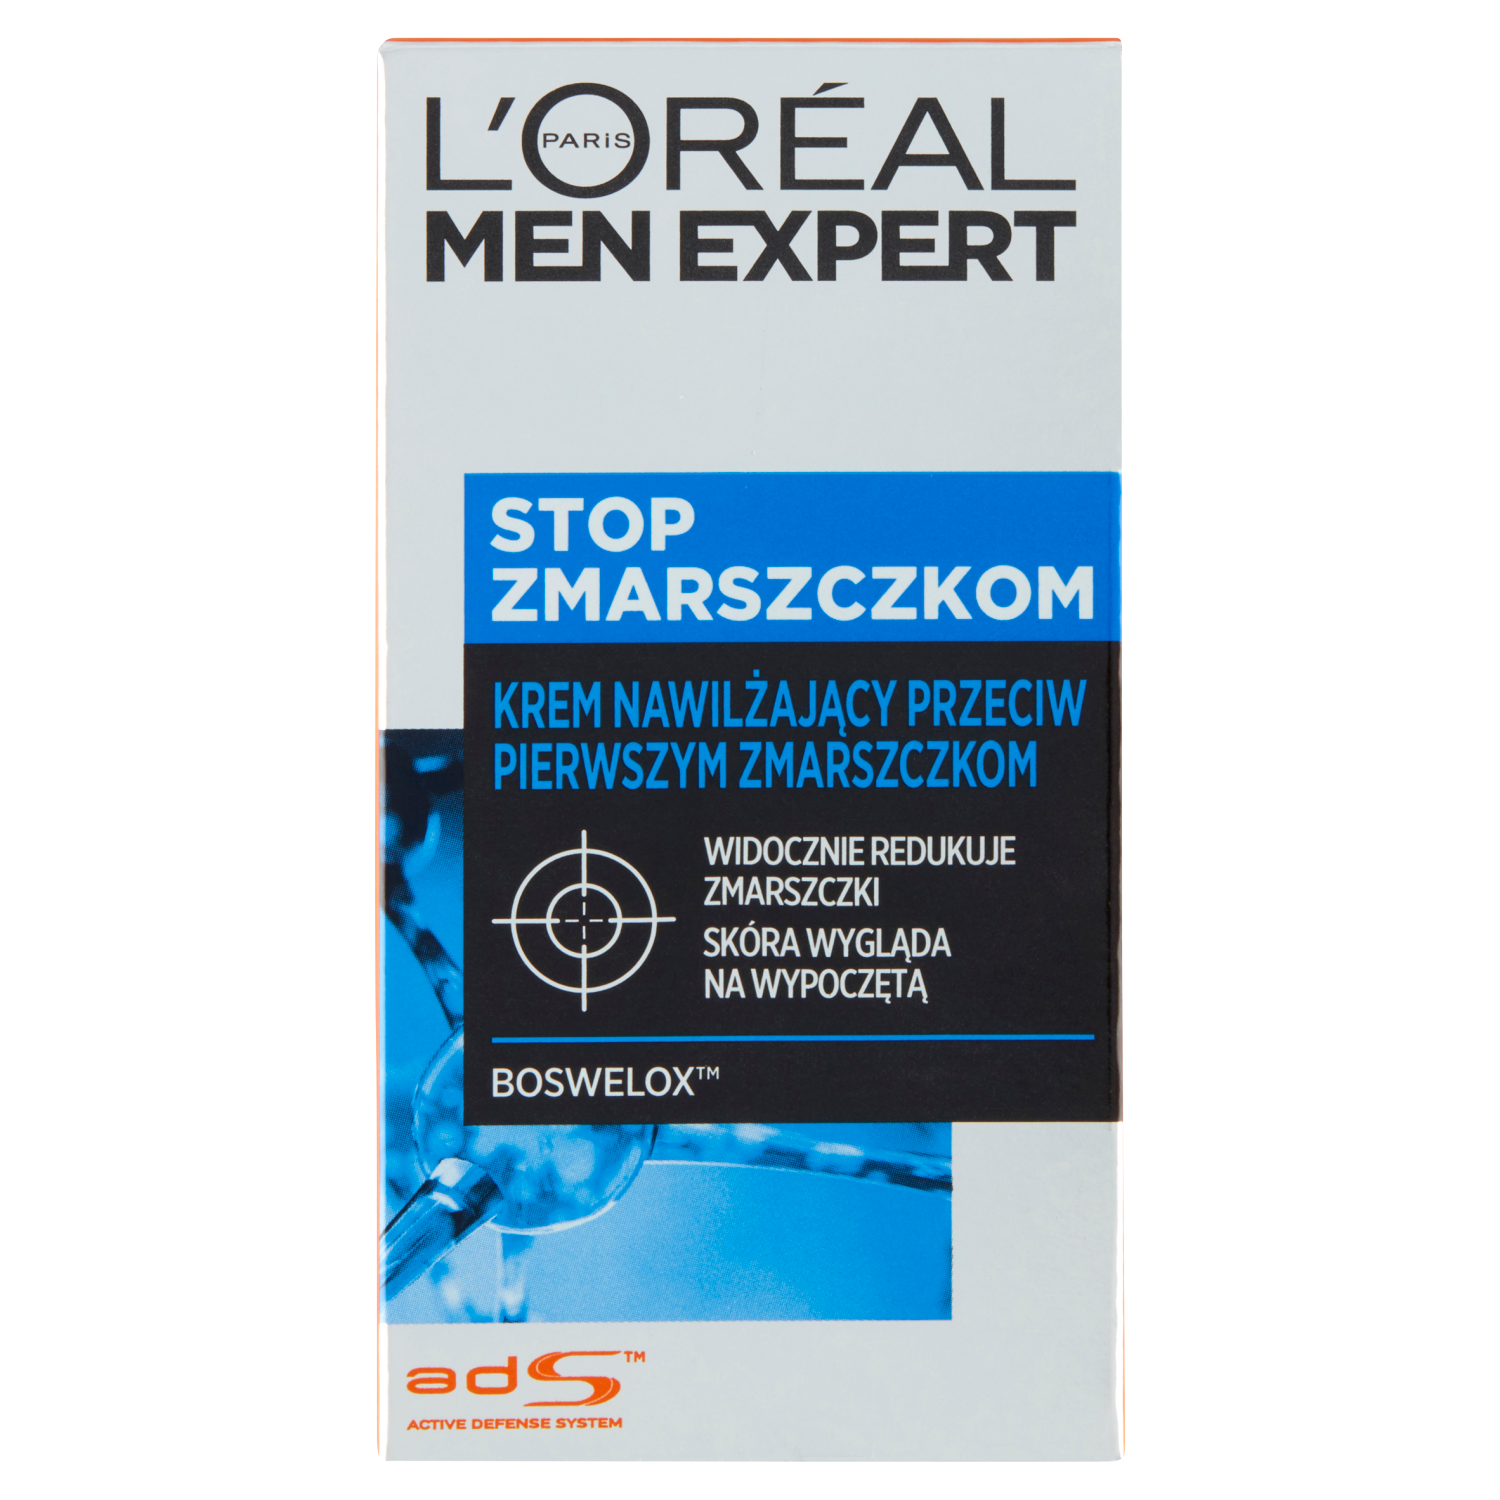 L'Oréal Paris Men Expert Stop Zmarszczkom увлажняющий крем для лица против первых морщин для мужчин, 50 мл